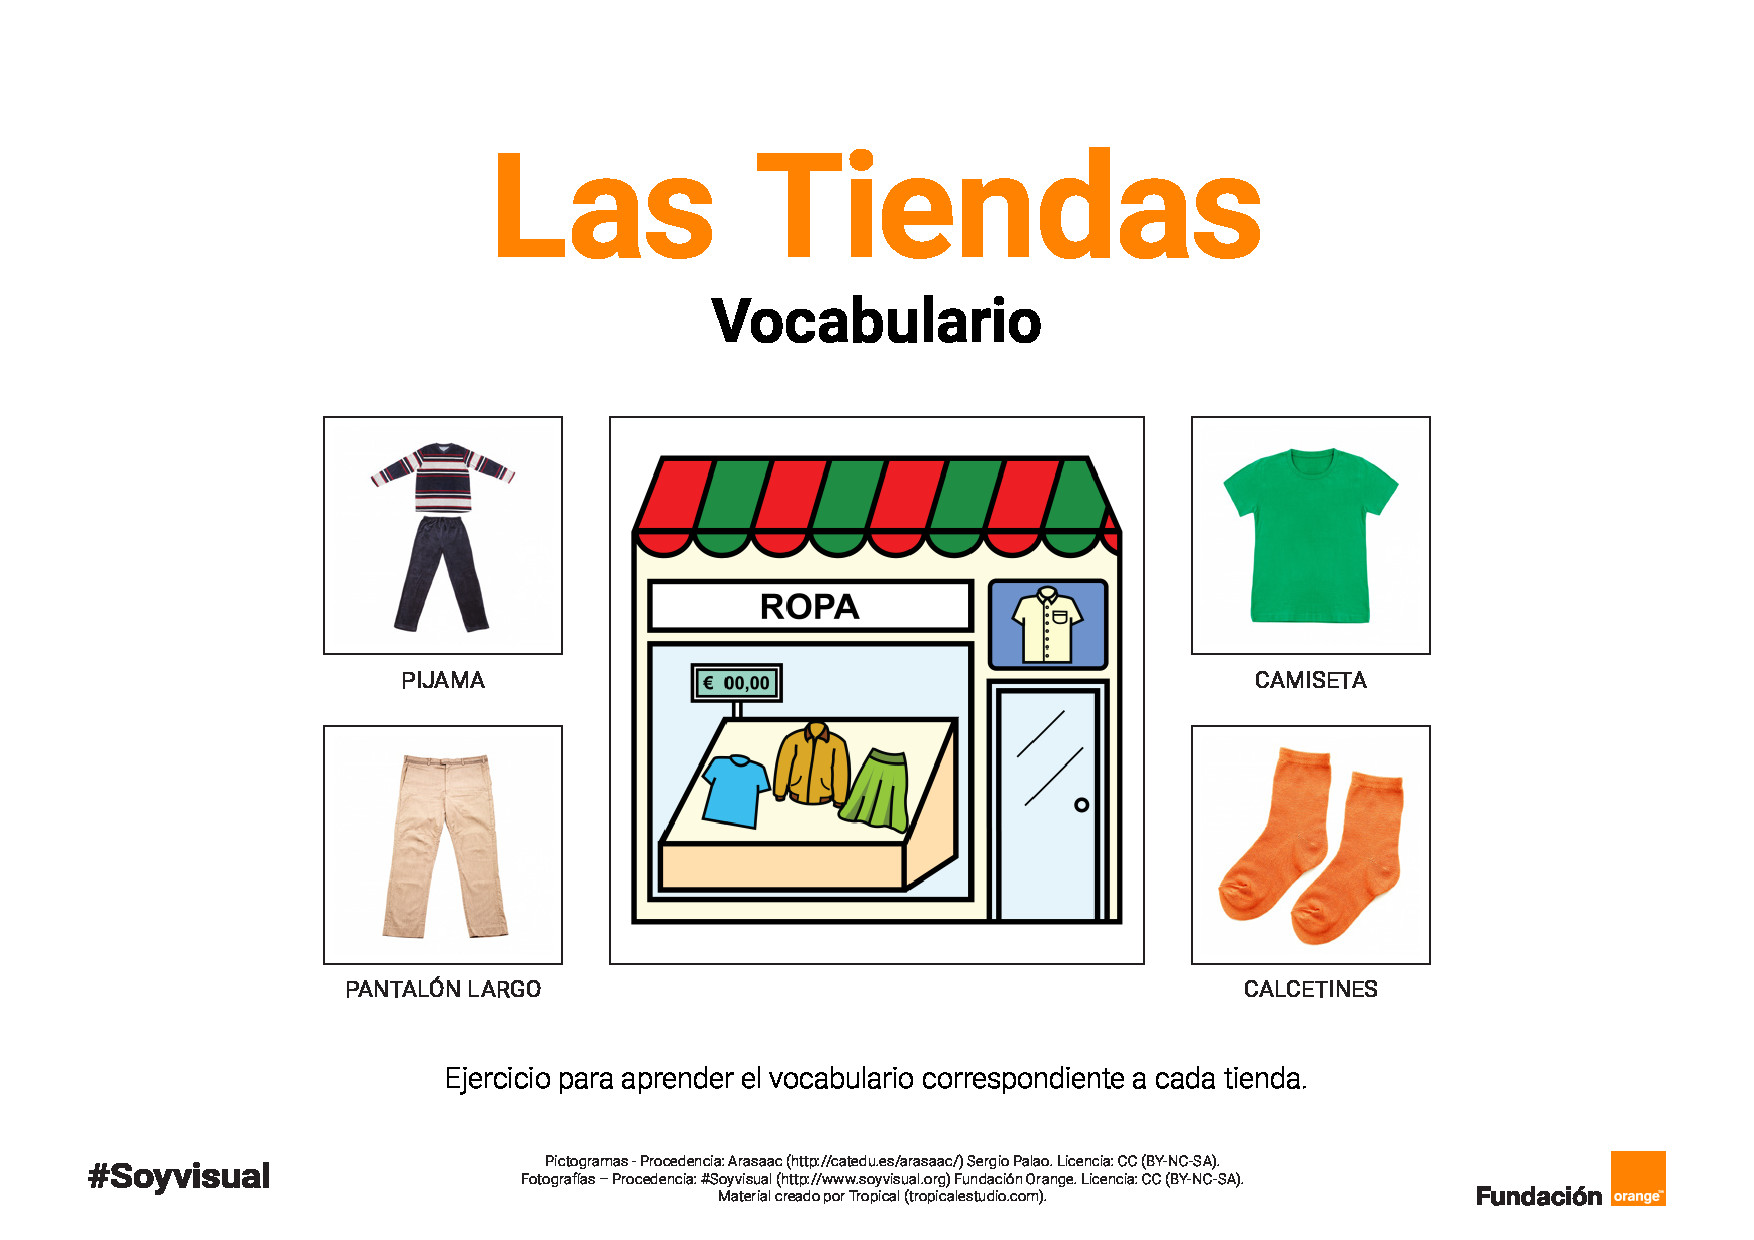 Las tiendas - Vocabulario y campos semánticos